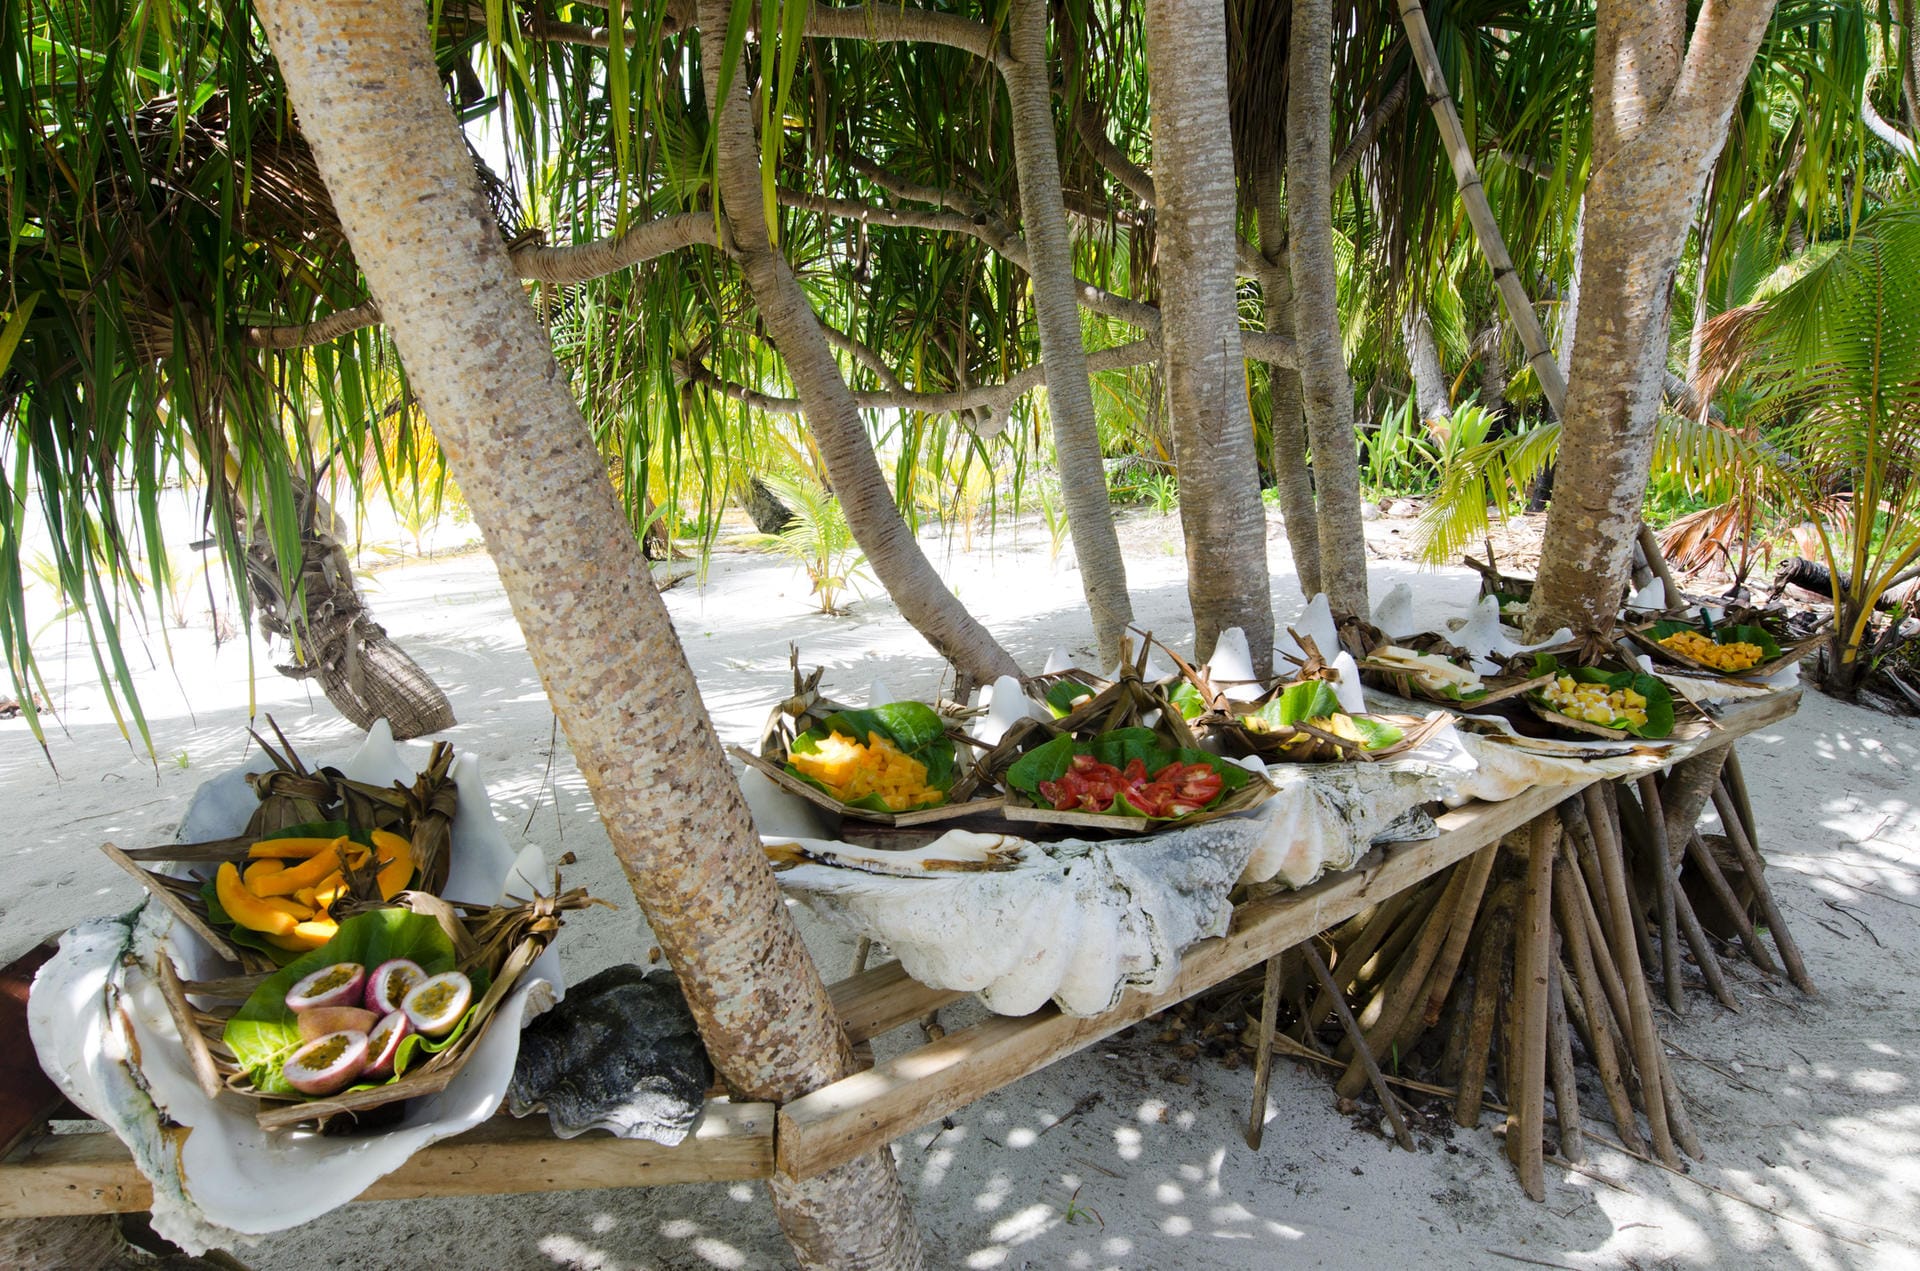 Die pazifische Insel bietet auch leckeres Essen.